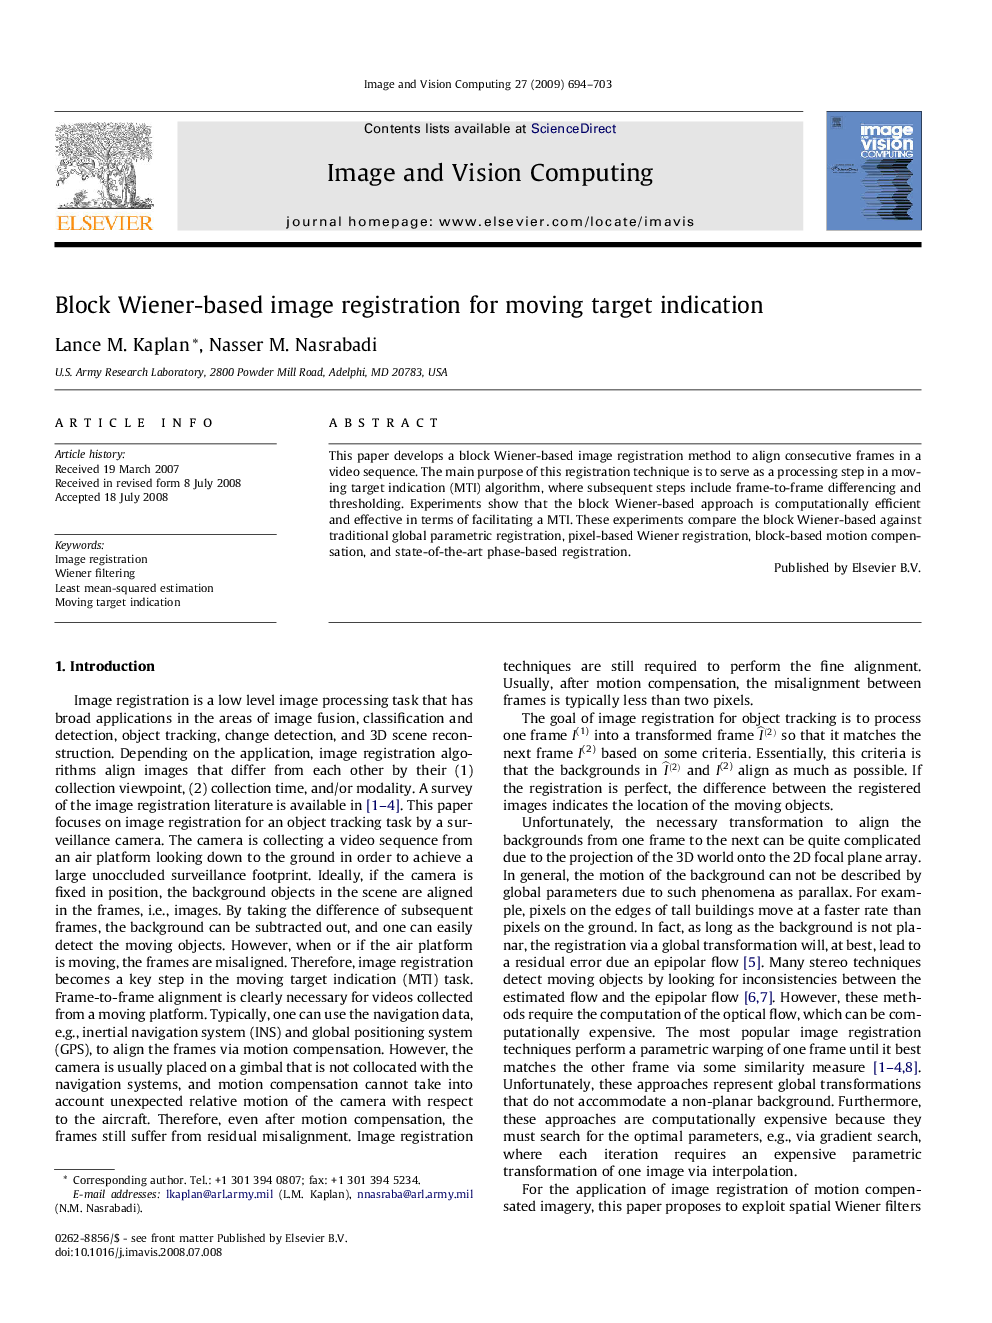 Block Wiener-based image registration for moving target indication